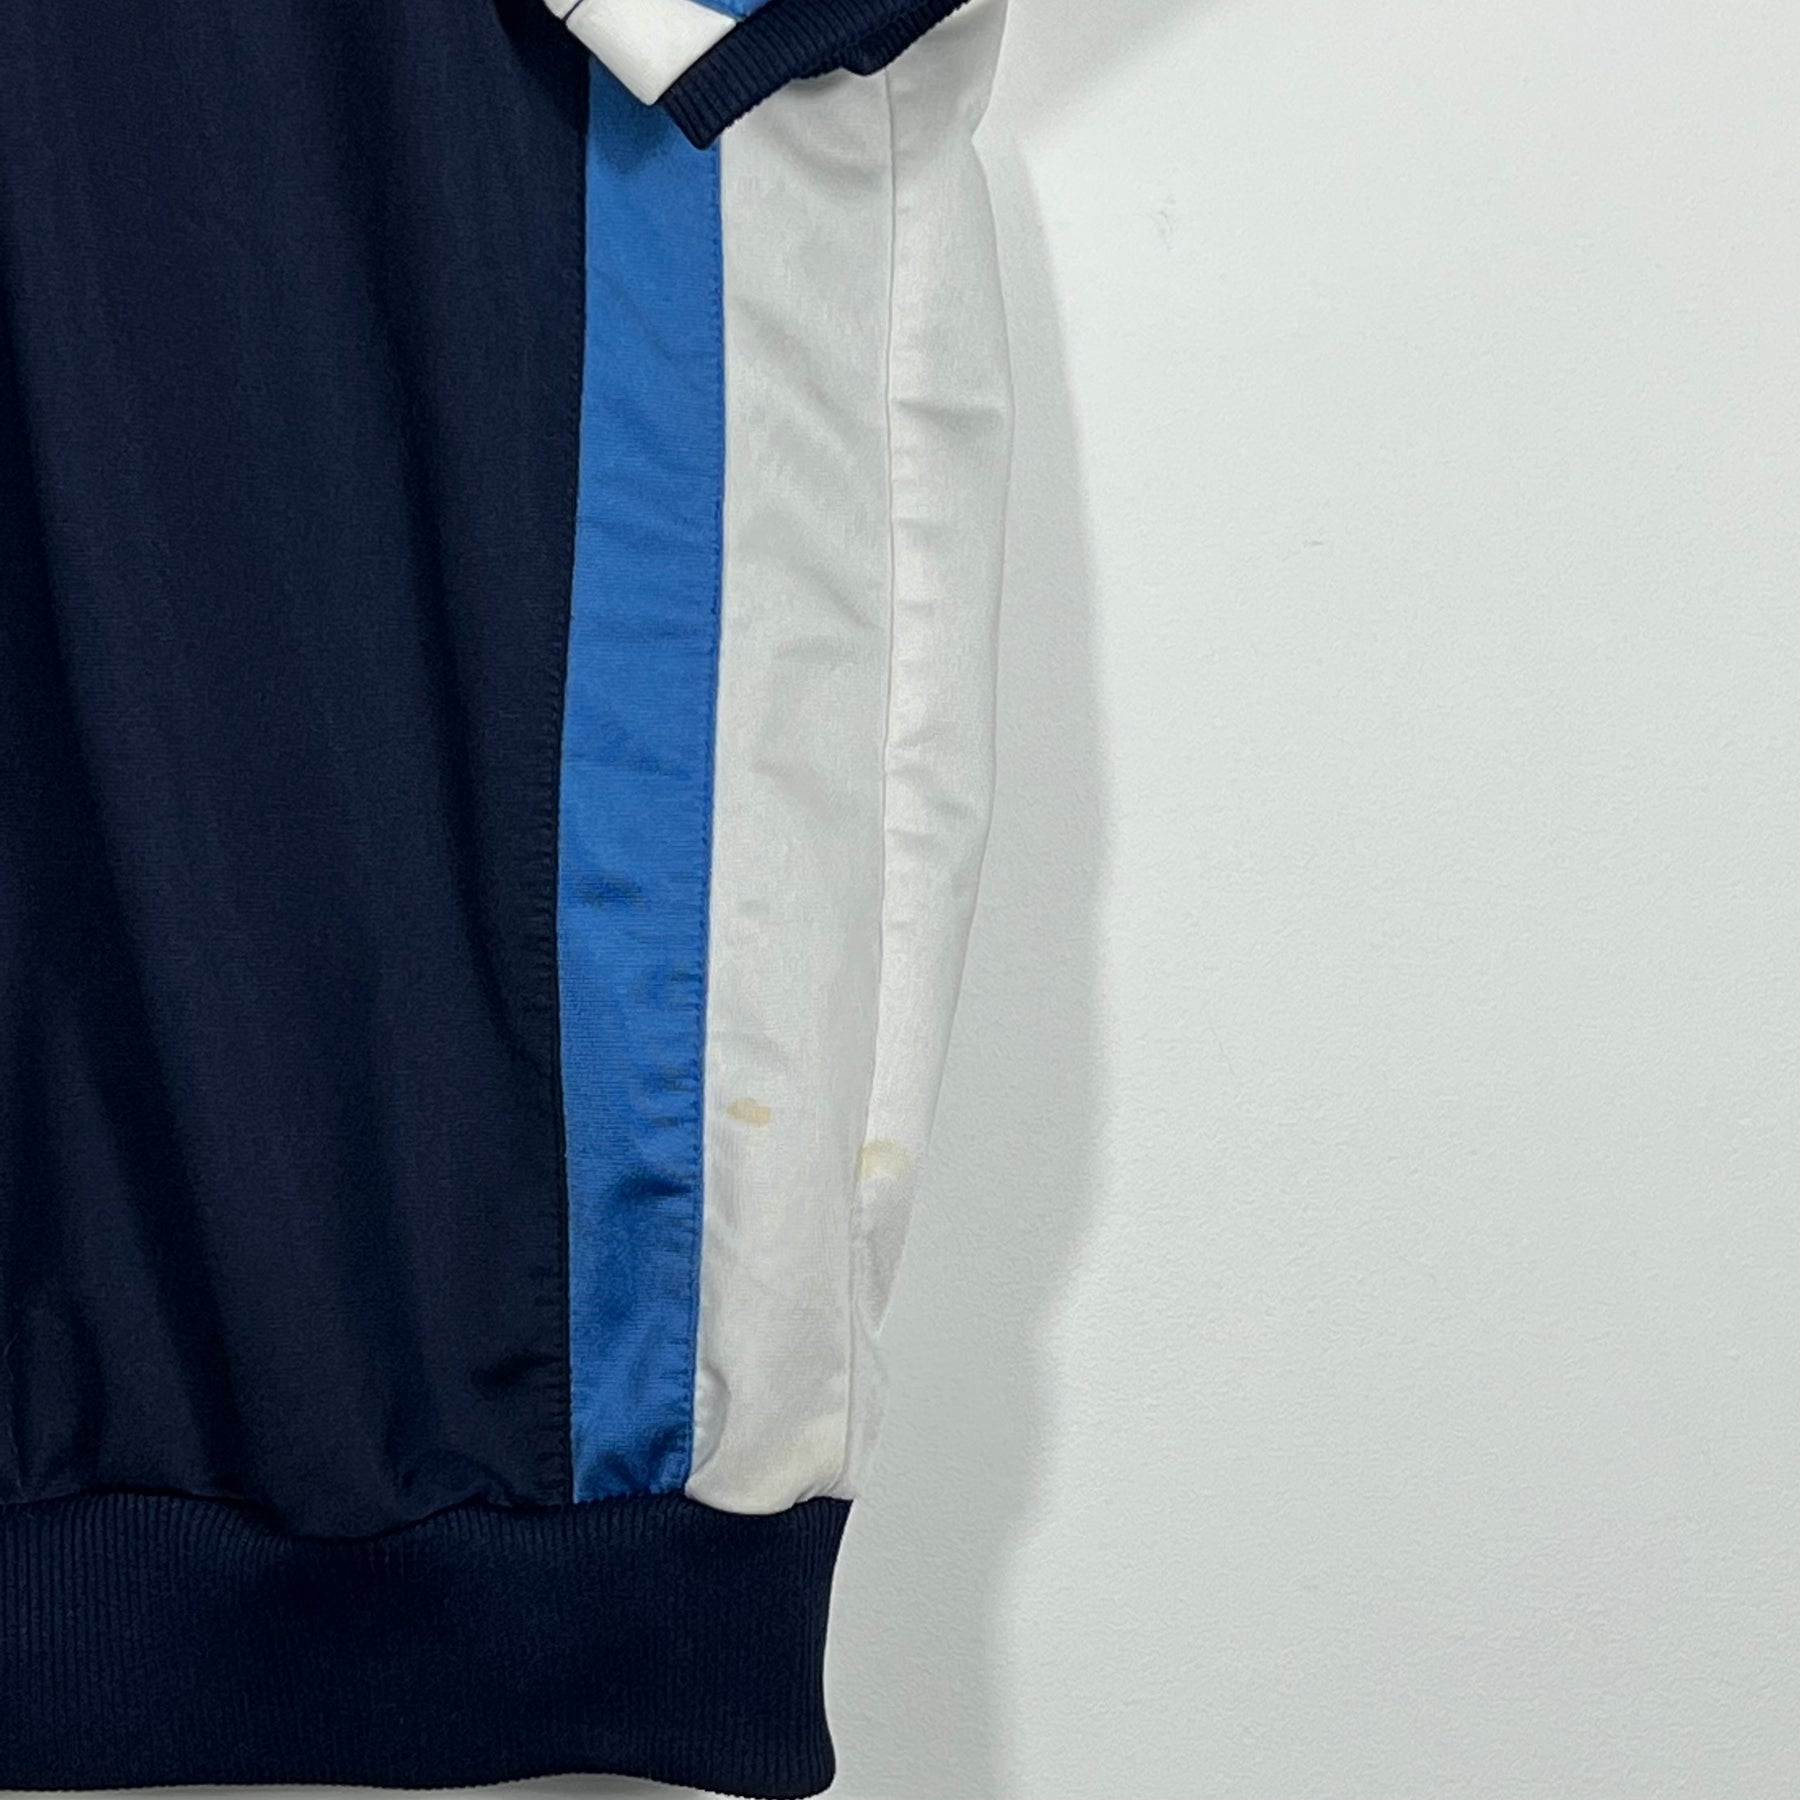 Vintage Adidas Half-Sleeve Track Jacket - Men's Large